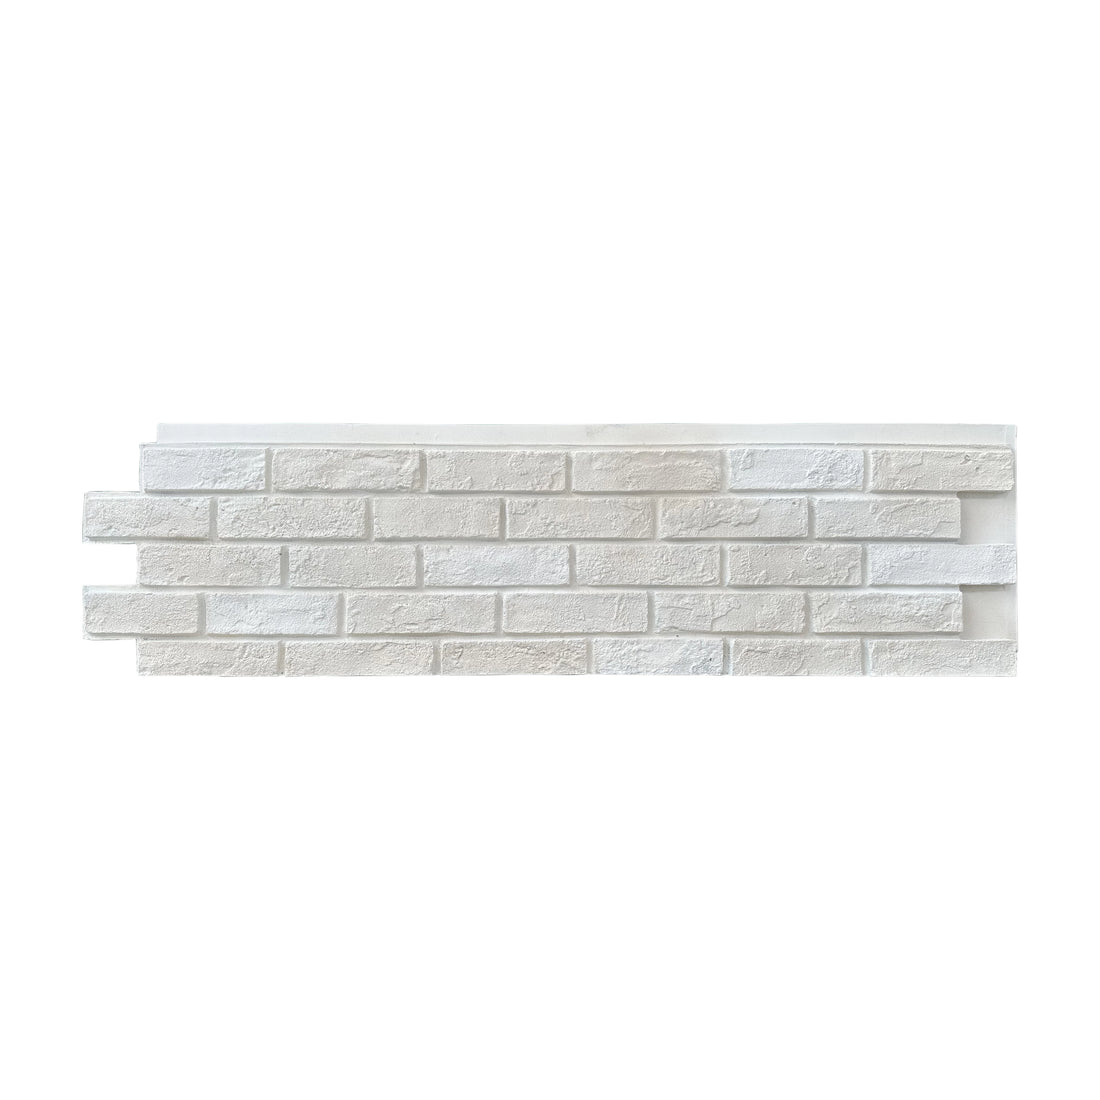 PU 3D Faux Stone Wall Panels Red Brick Wall Panel Imitation Stone Wall Panel